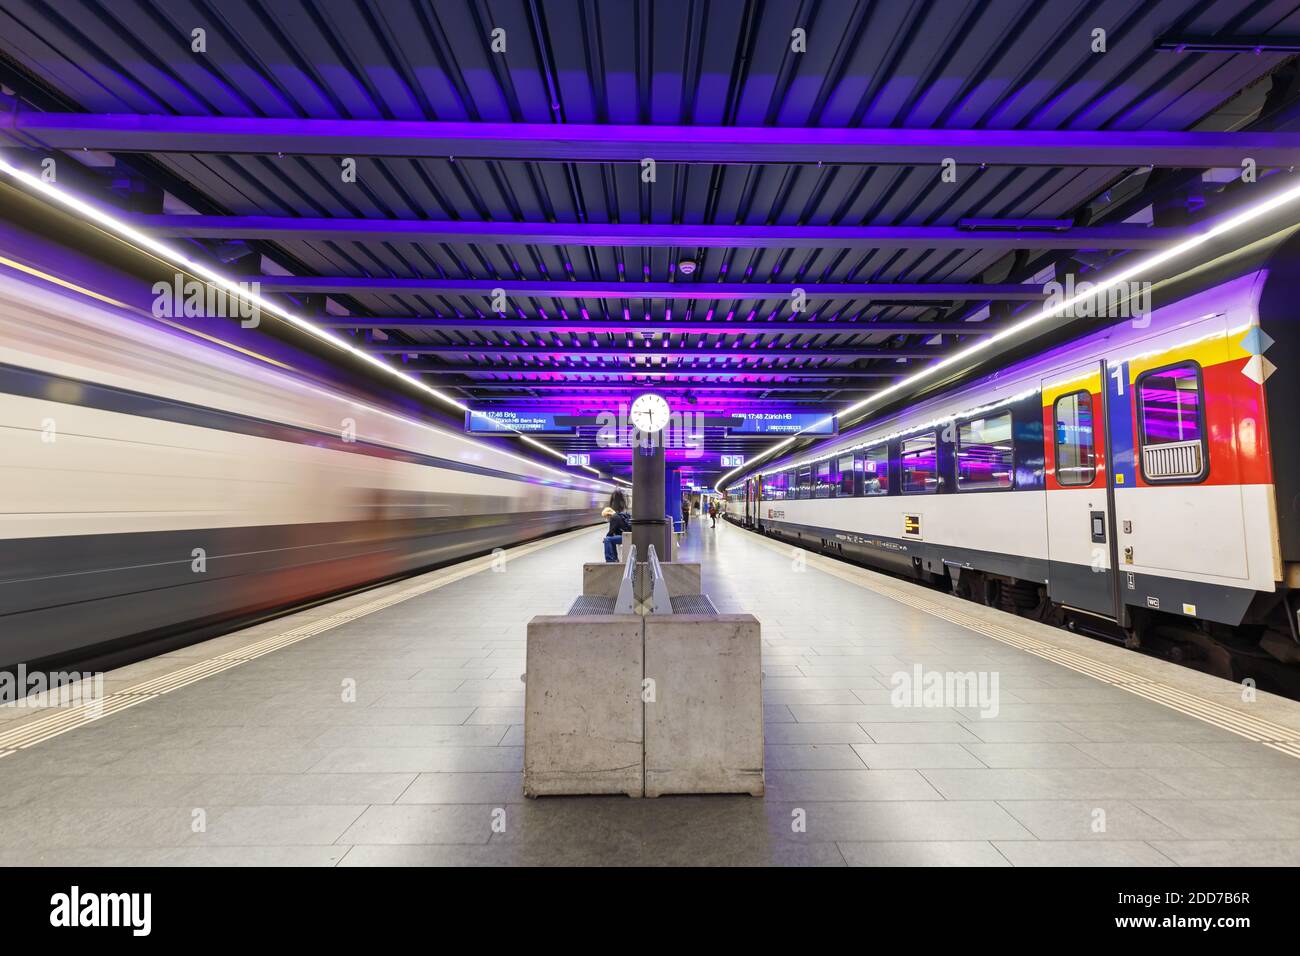 Zurich, Switzerland - September 23, 2020: Trains at Zurich Airport railway station in Switzerland. Stock Photo